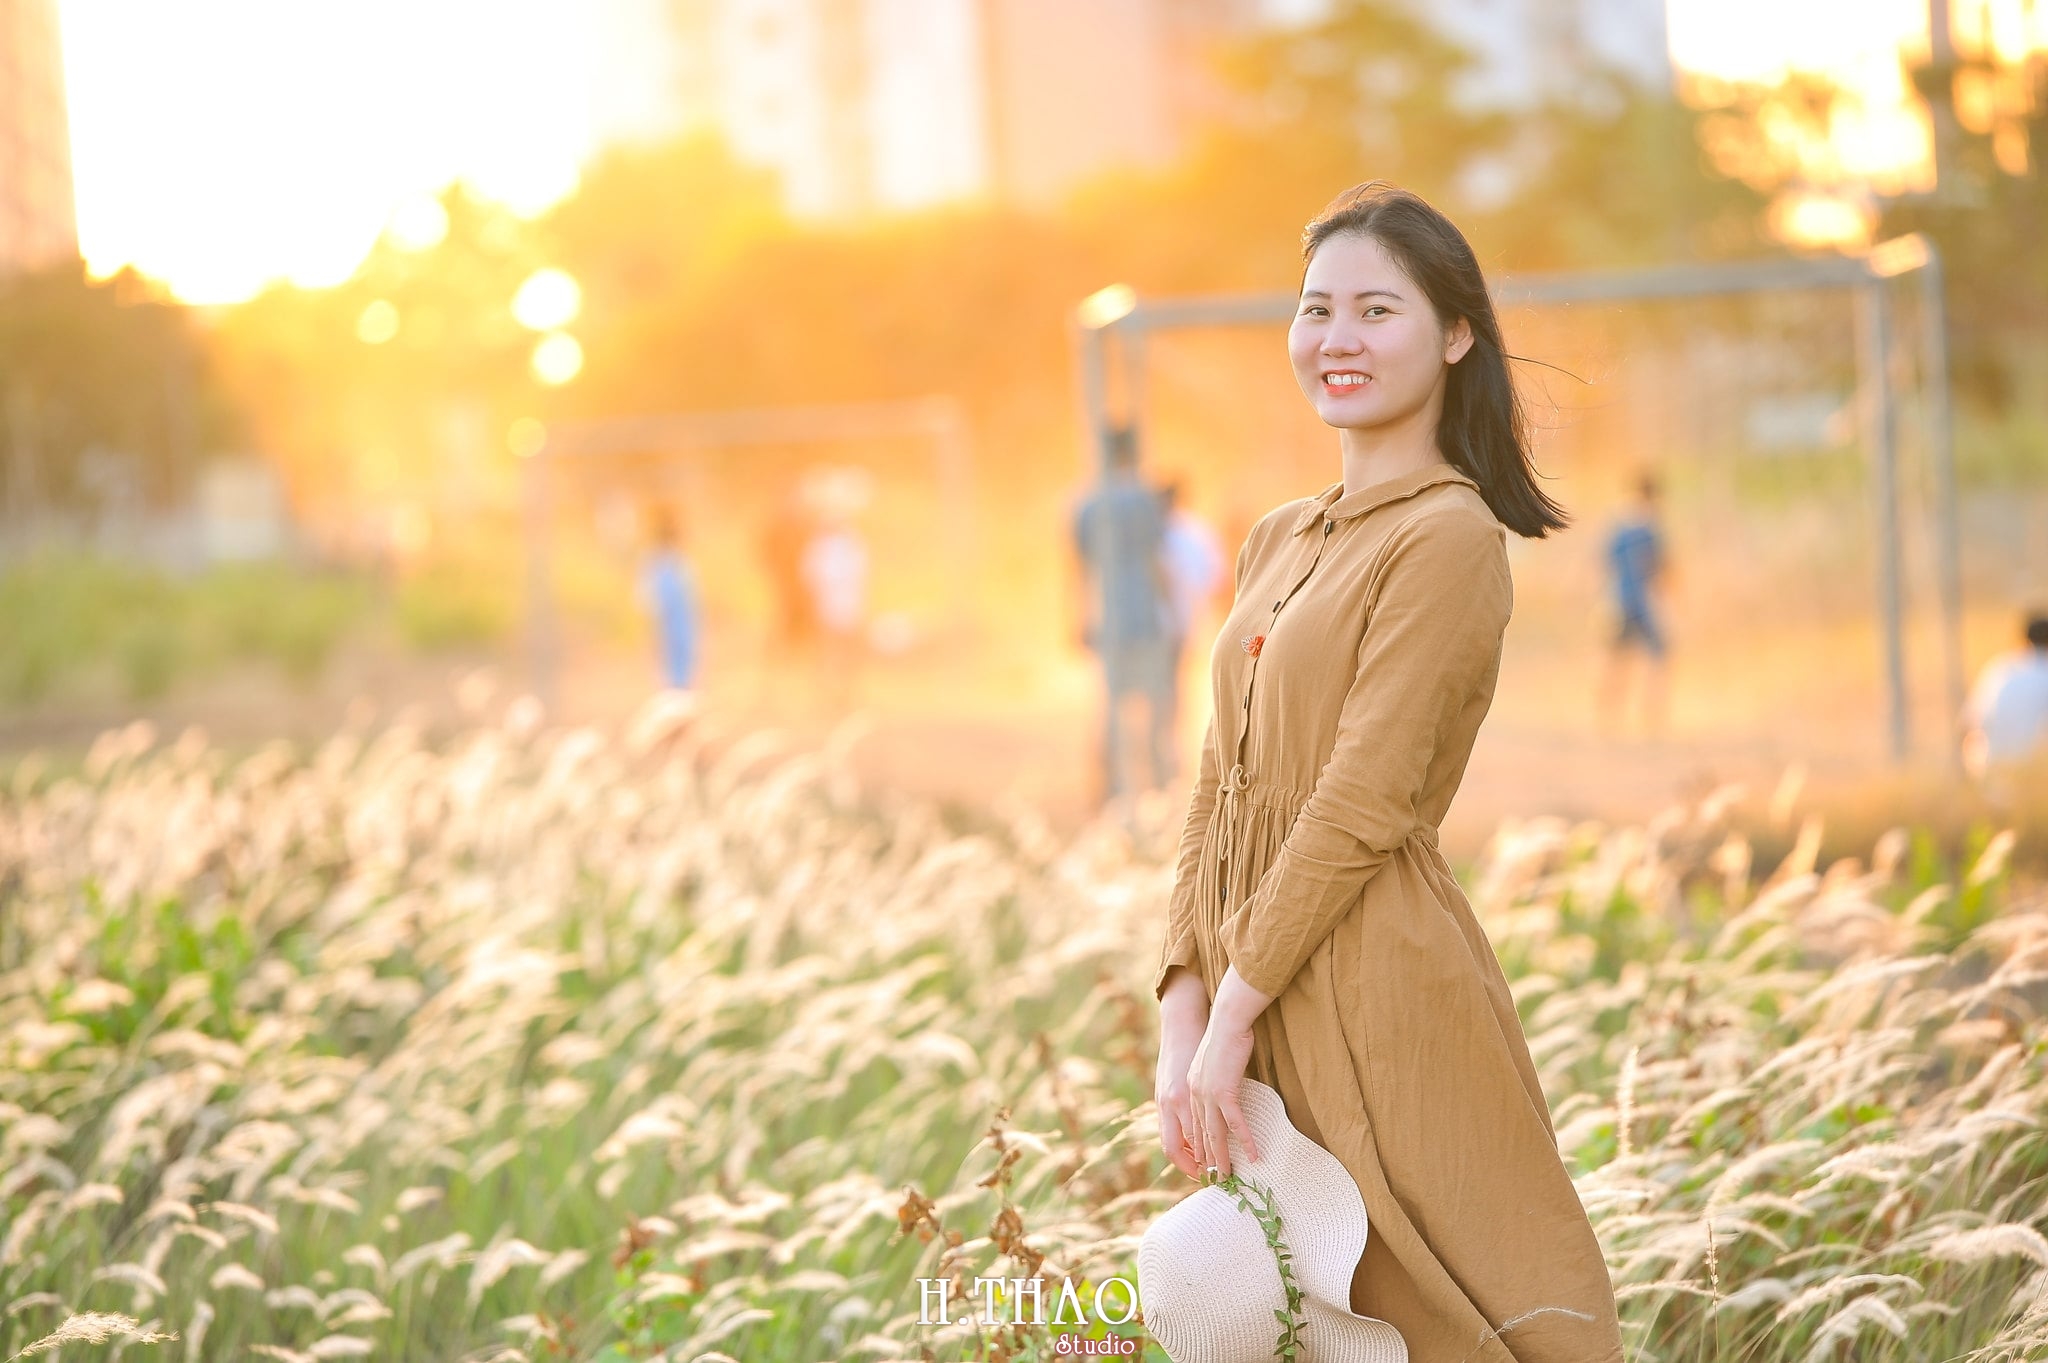 Co lau quan 9 2 min - Góc ảnh cỏ lau quận 2 tuyệt đẹp với nắng chiều - HThao Studio